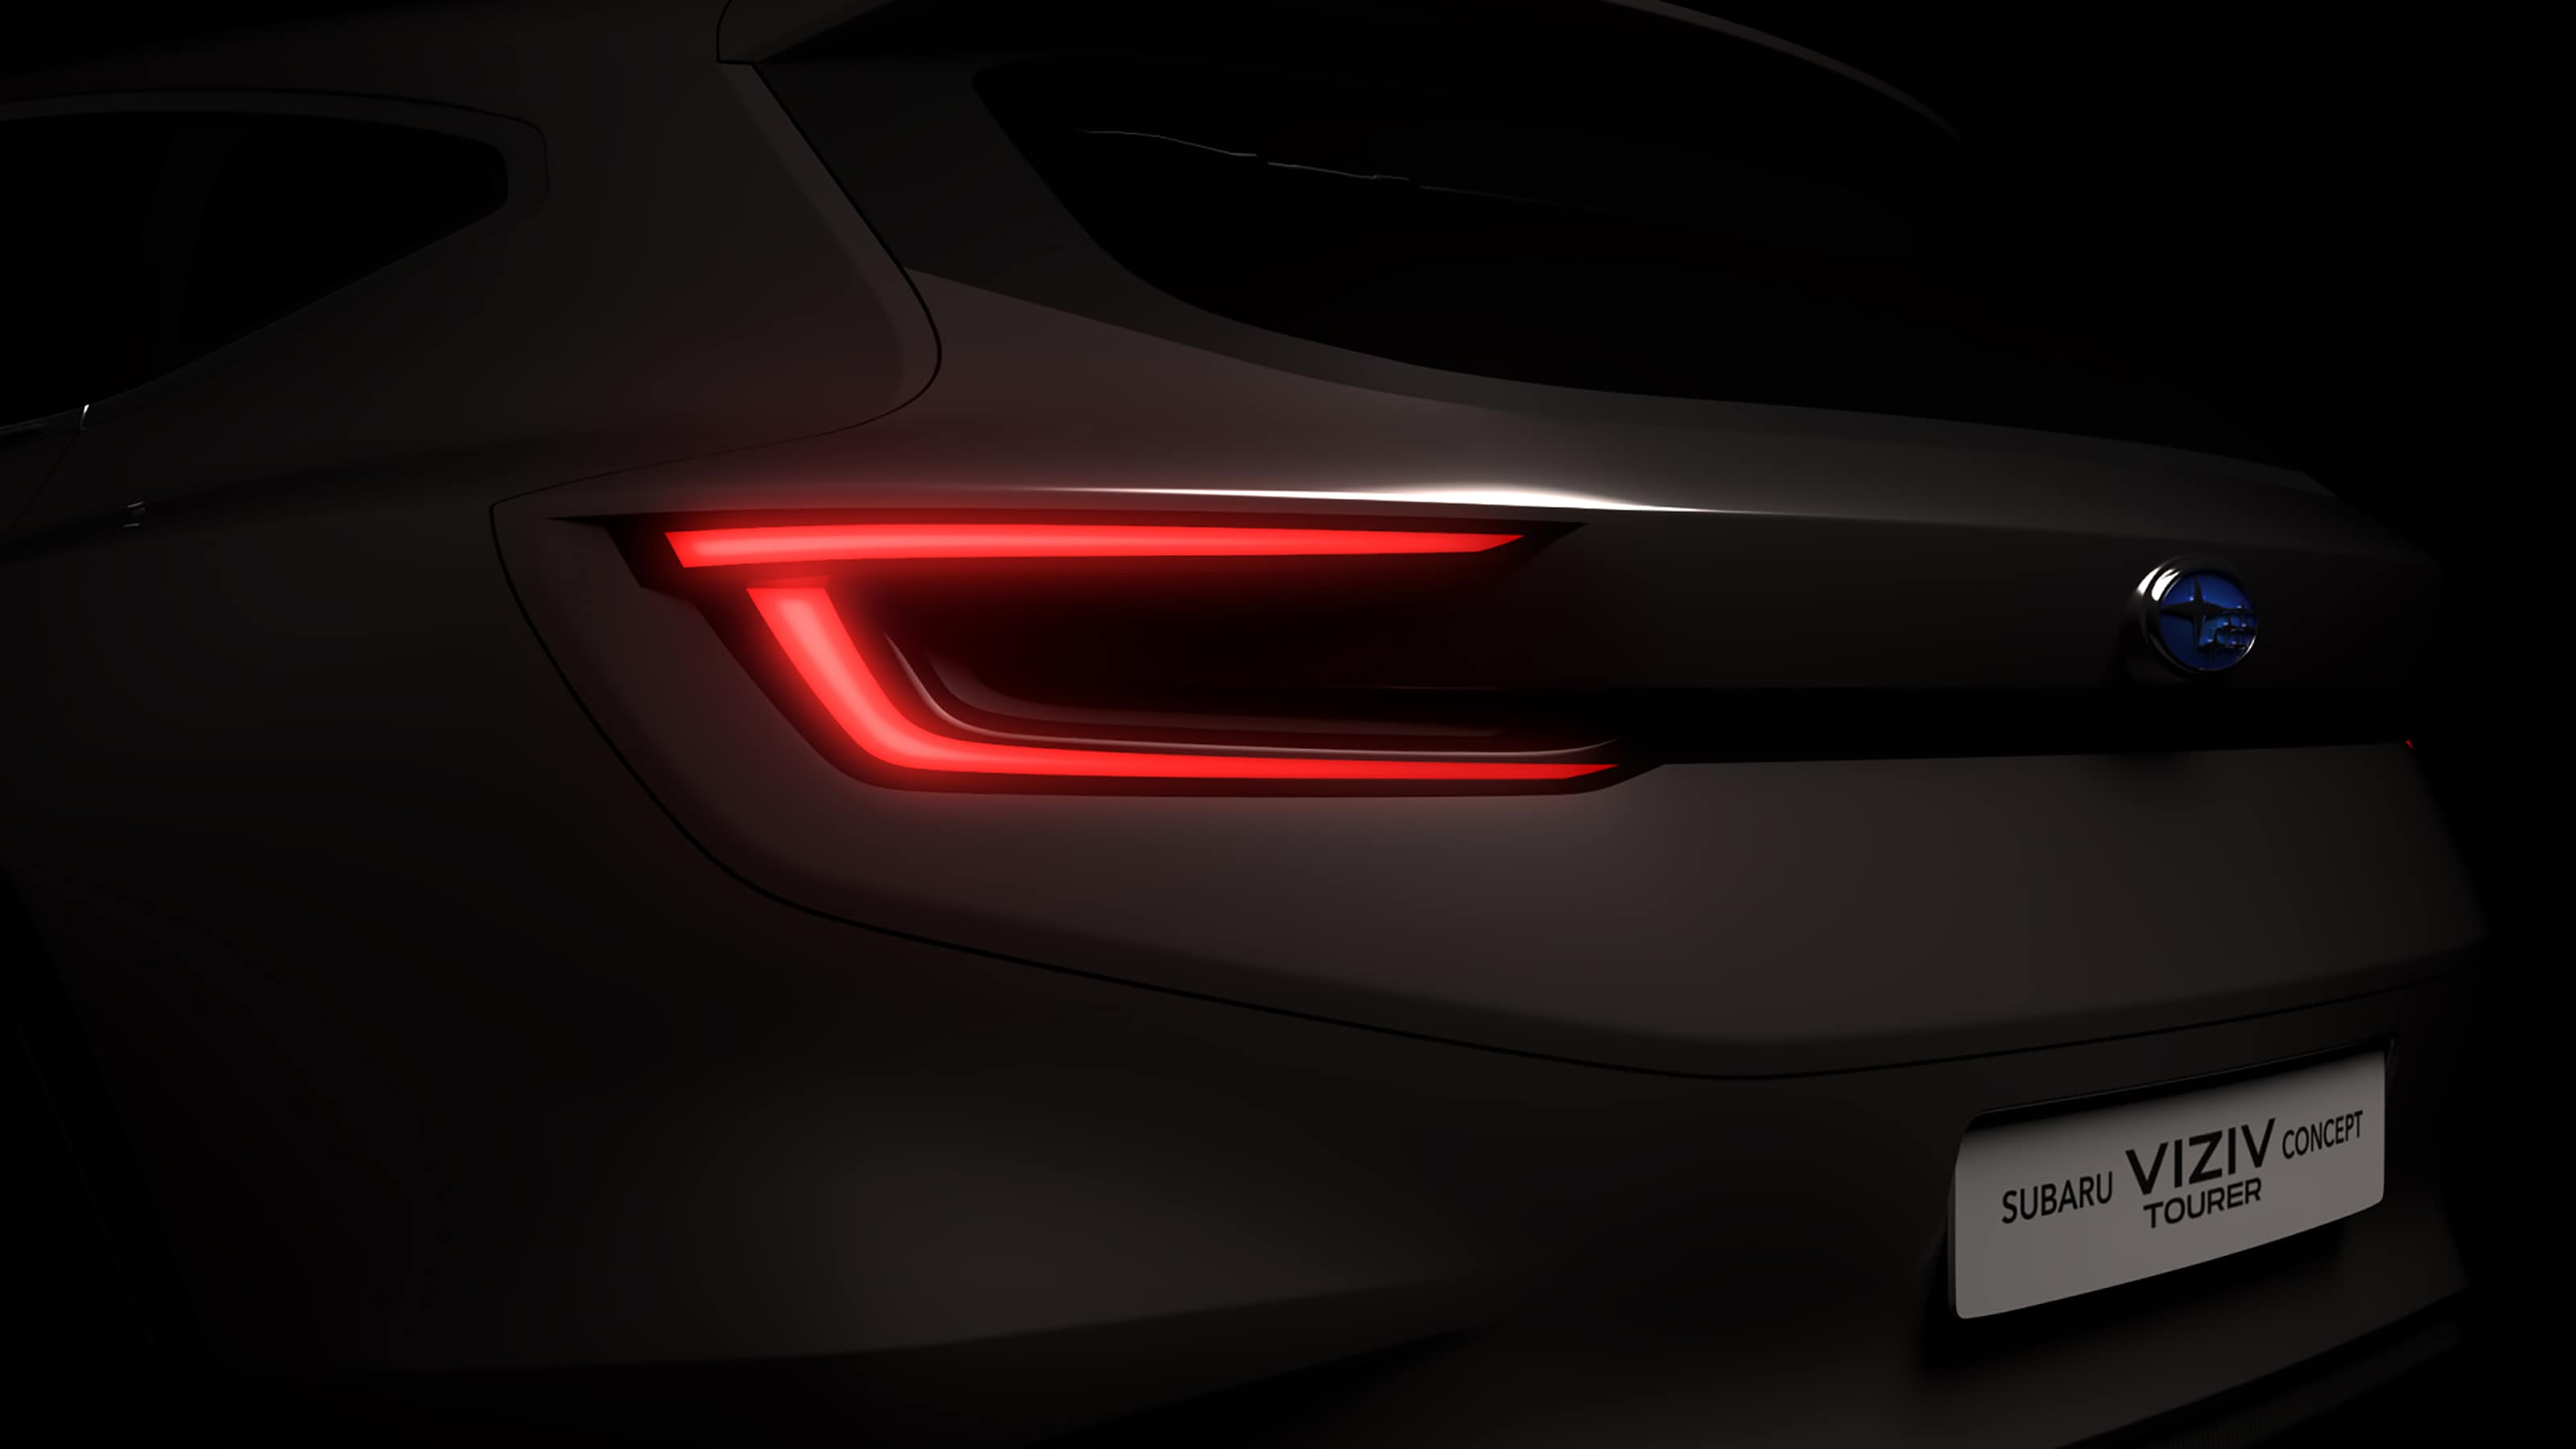 Subaru zeigt mit dem VIZIV Concept, wie ein künftiger Kombi der Marke aussehen könnte